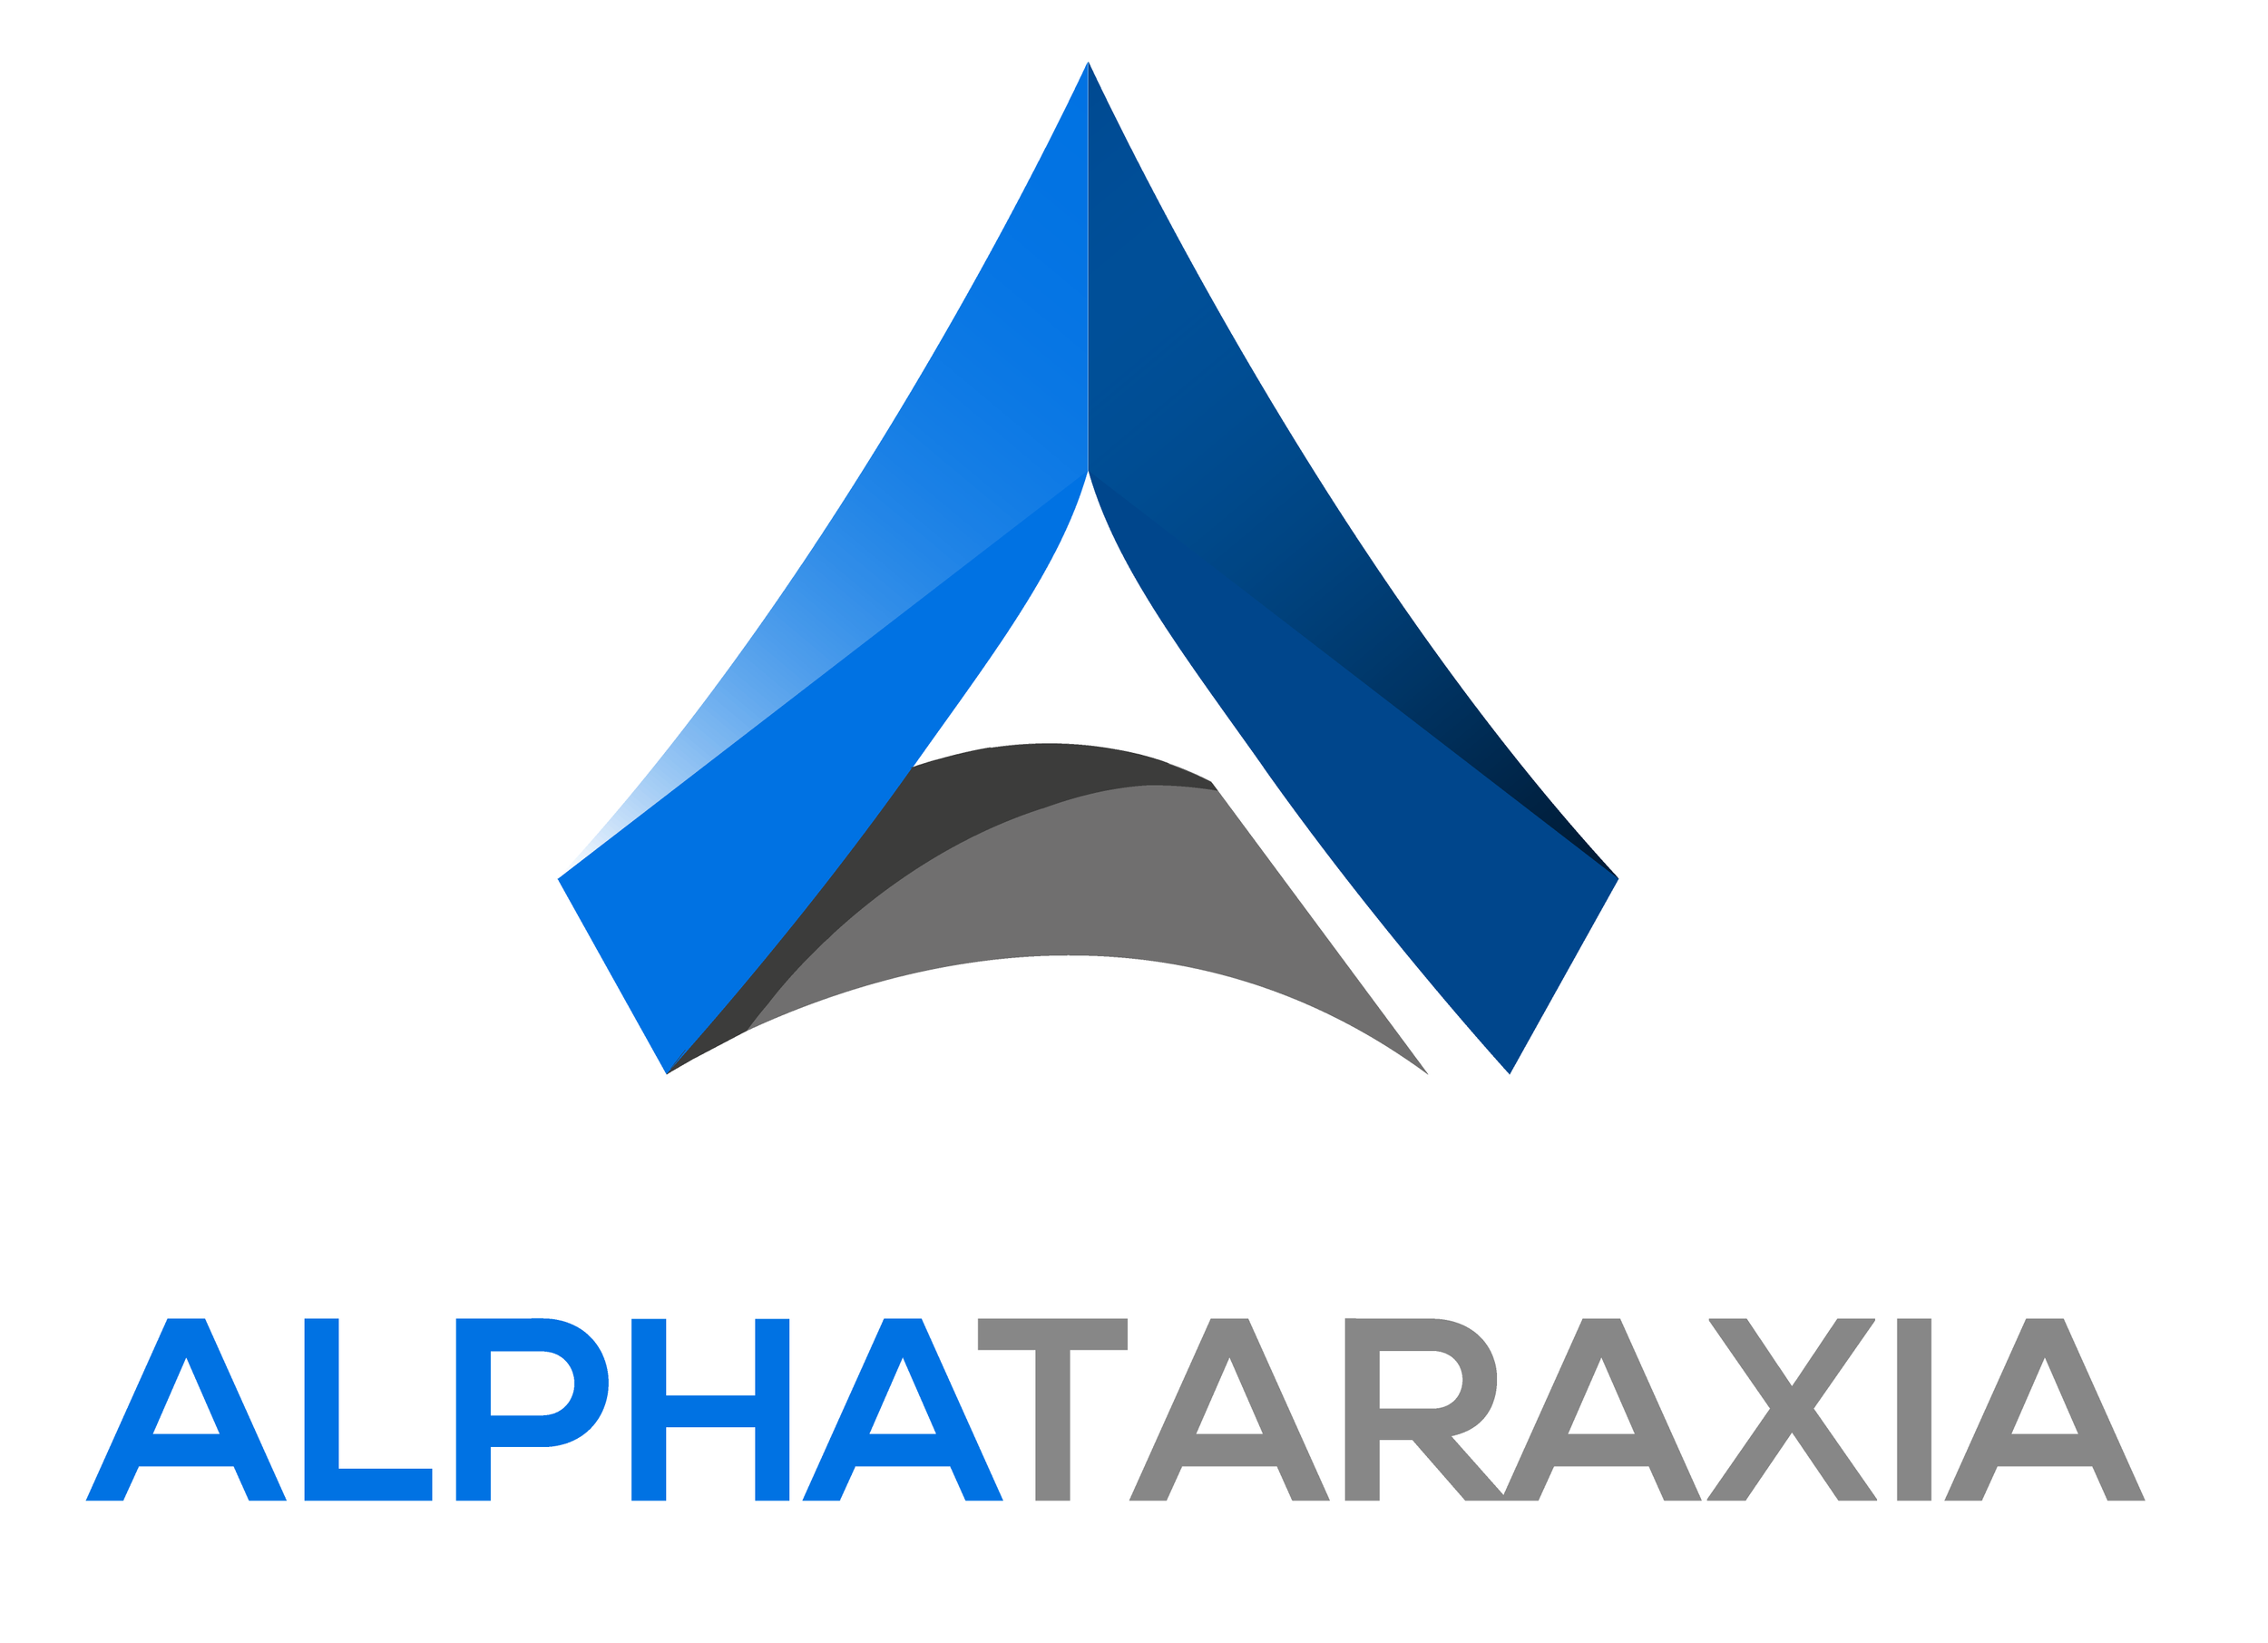 Alphataraxia - Logo.png